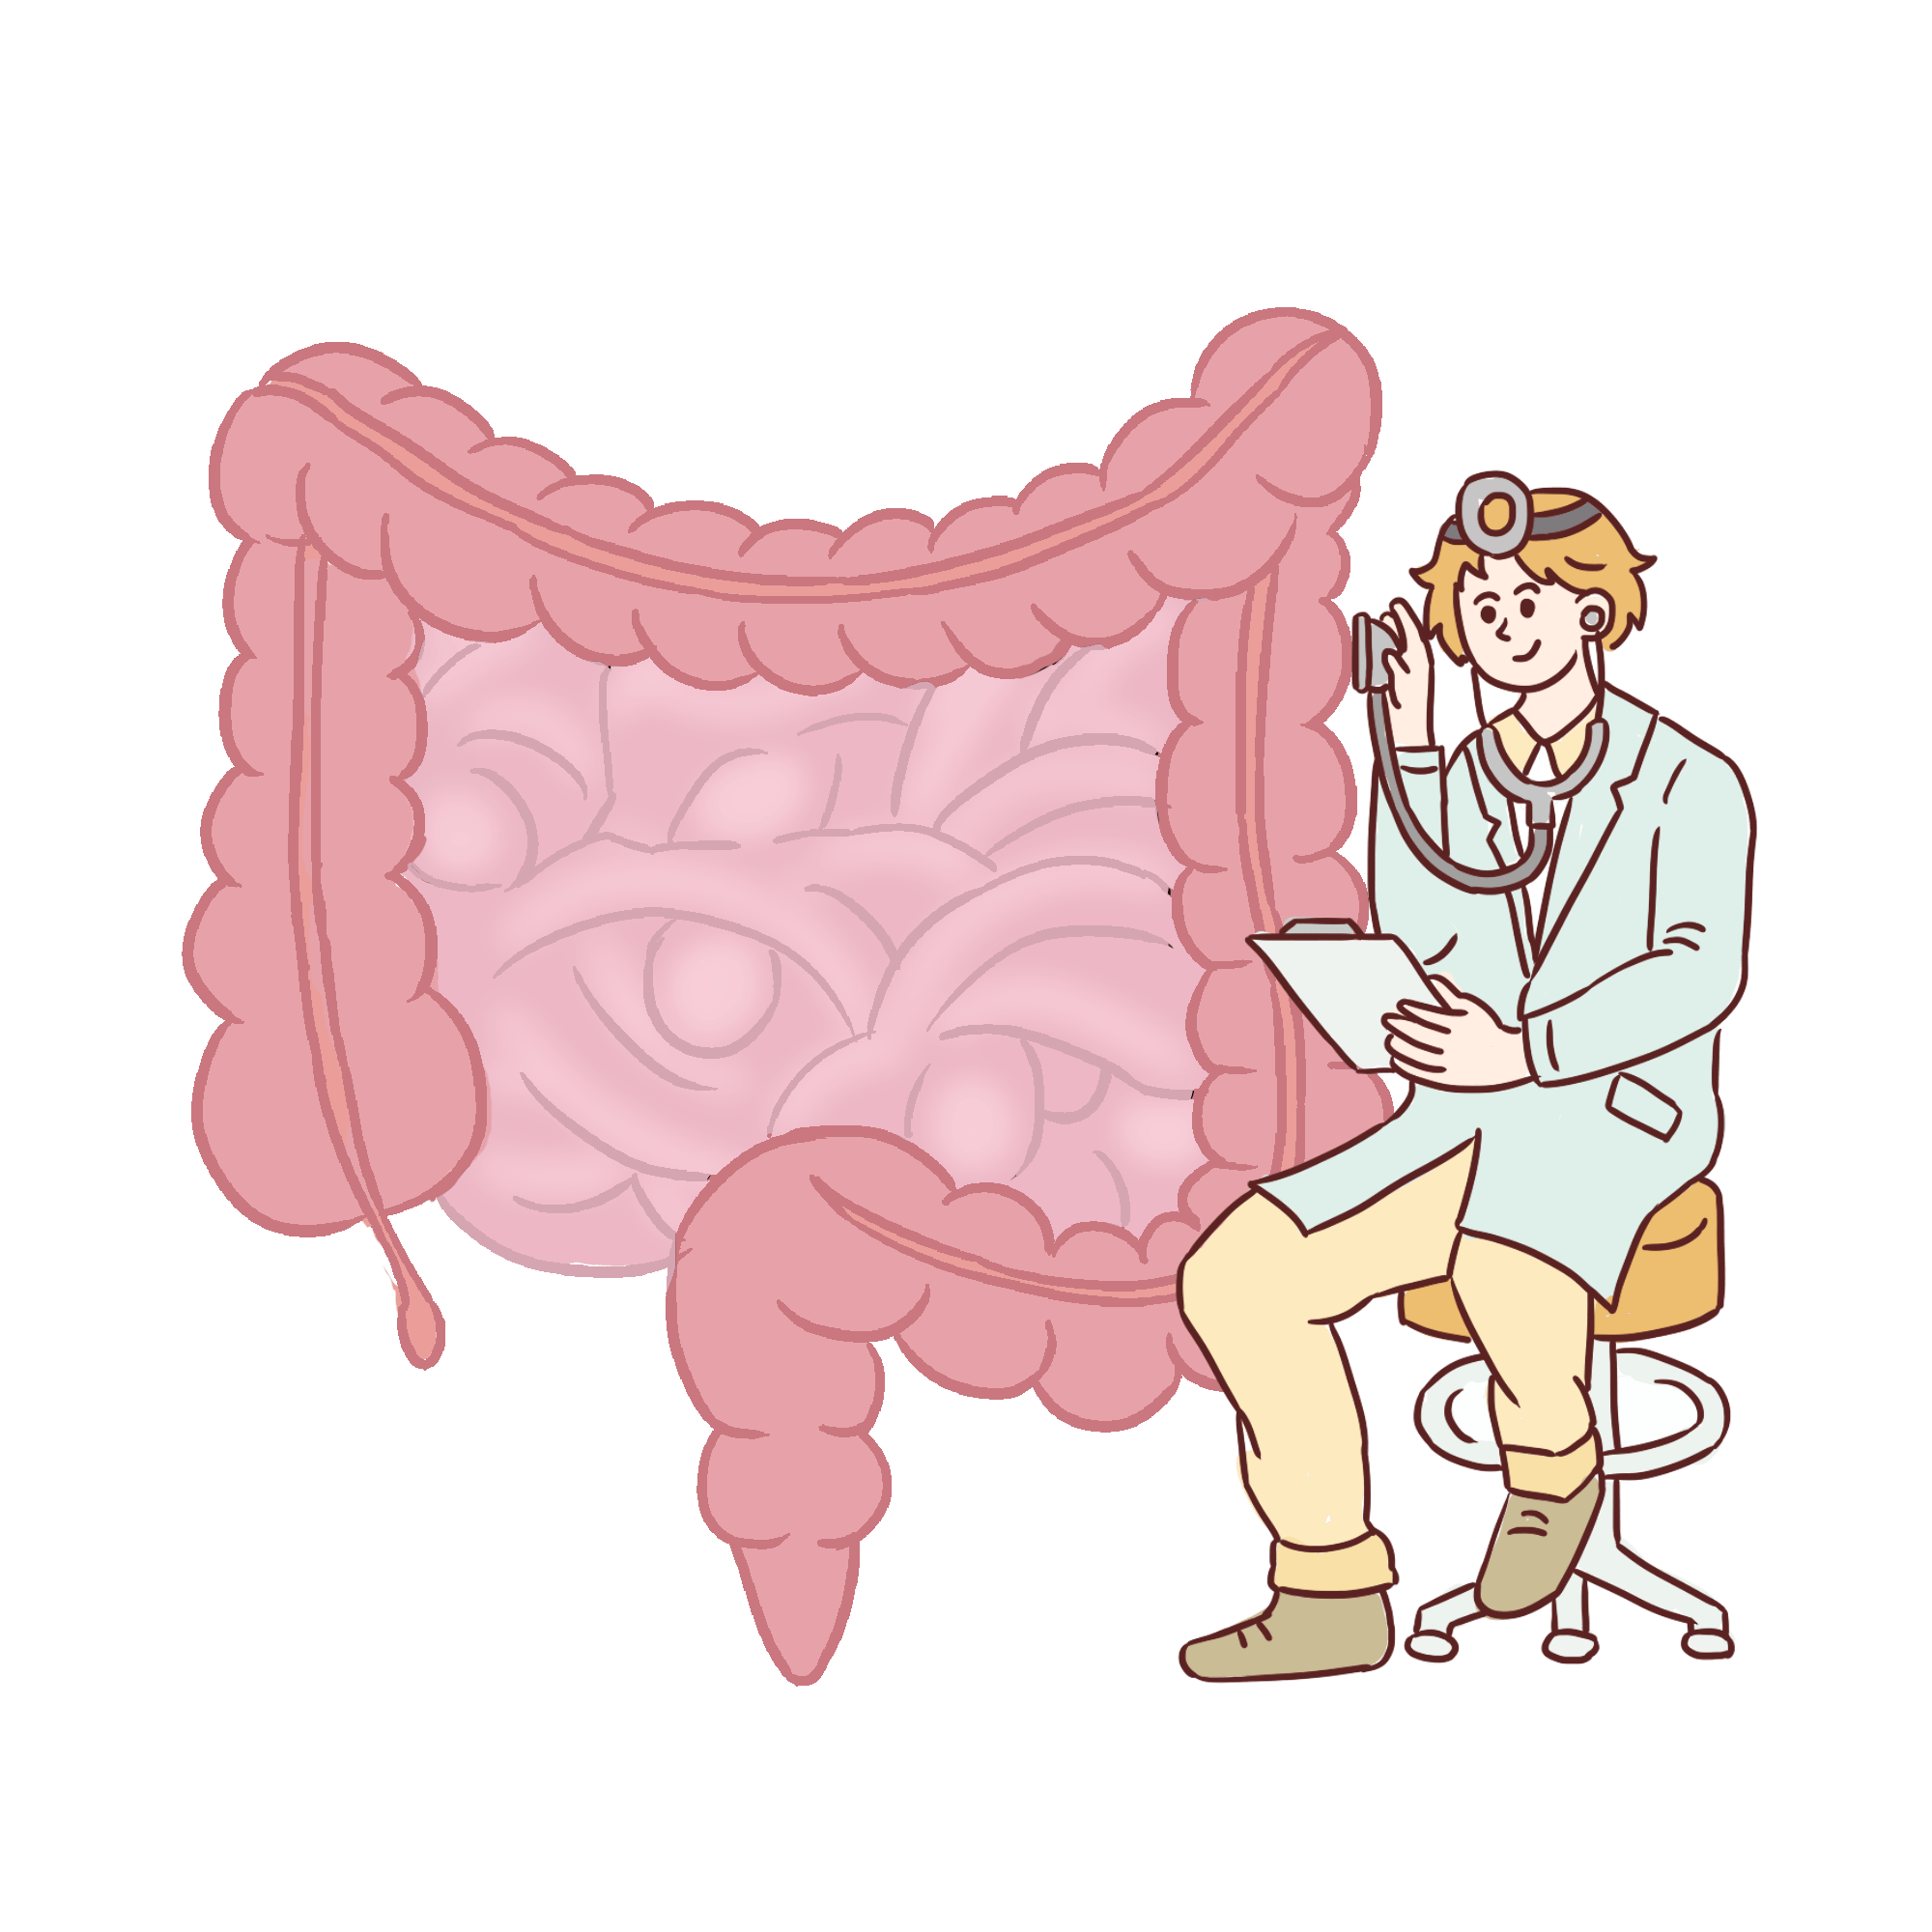 肠道疾病卡通图片